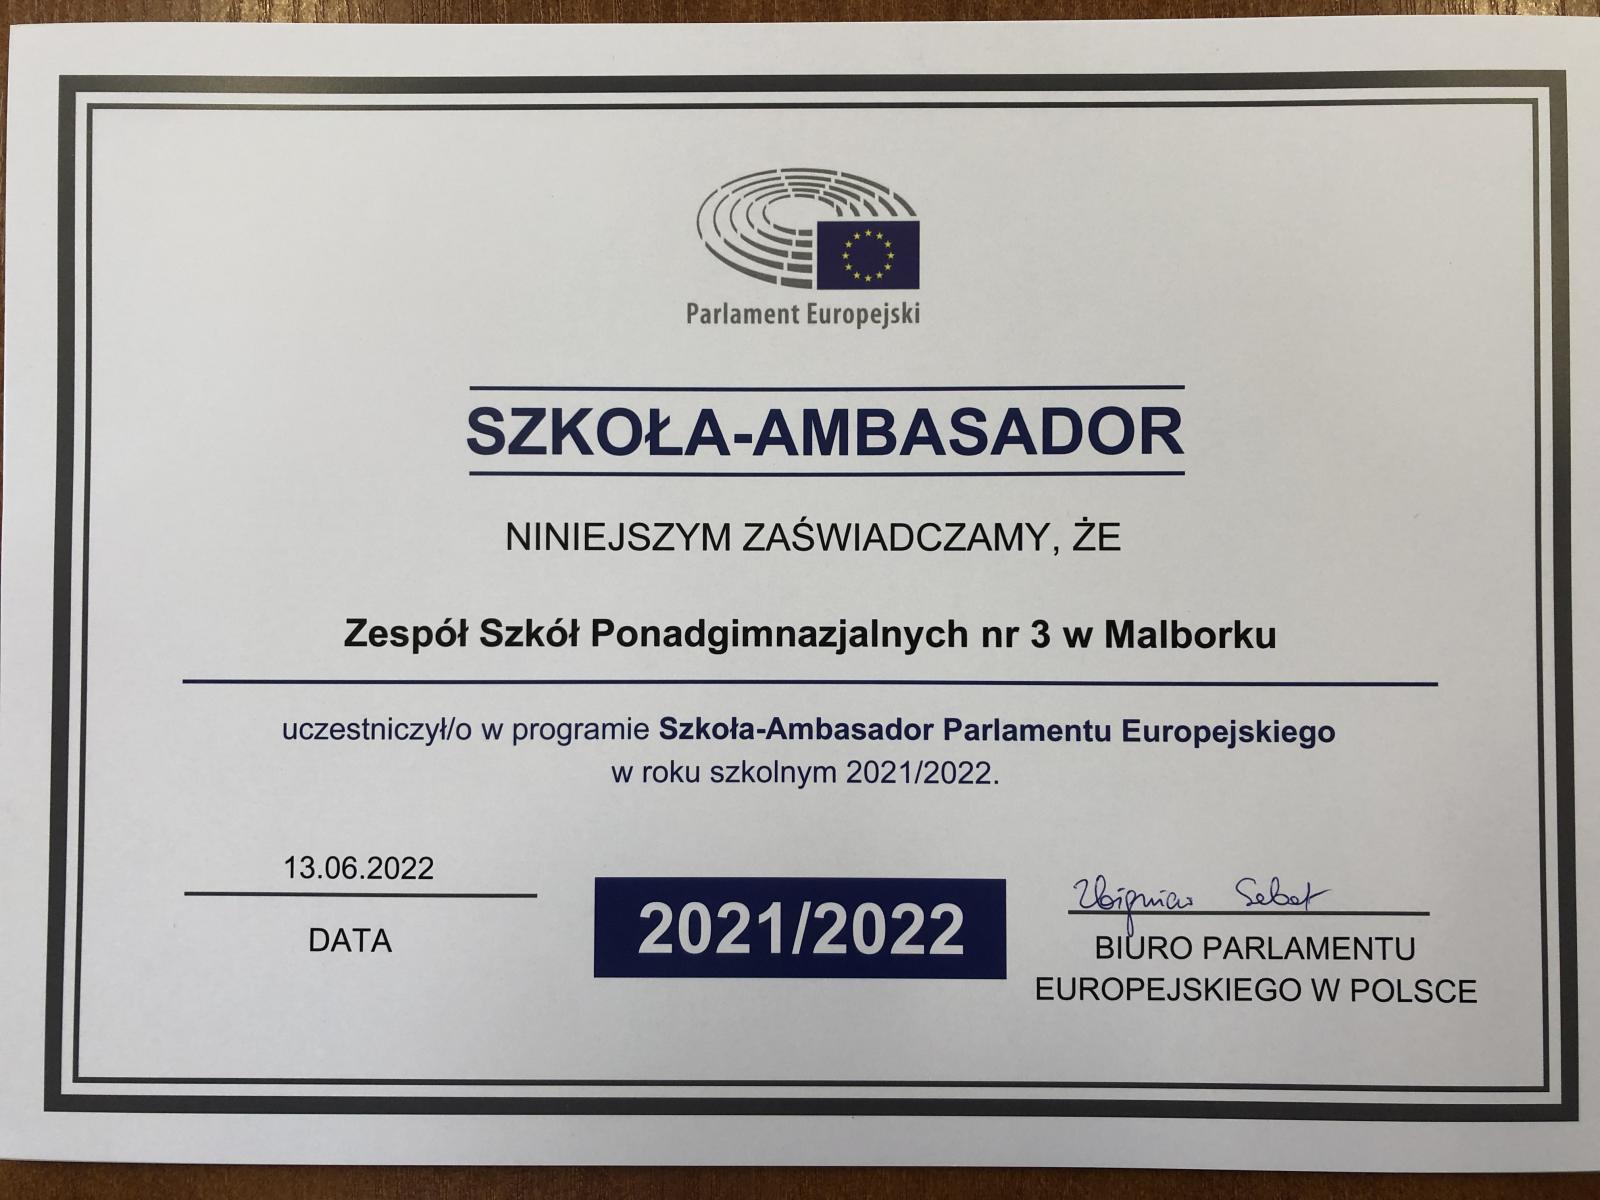 ZSP 3 Szkołą – Ambasadorem Parlamentu Europejskiego po raz piąty